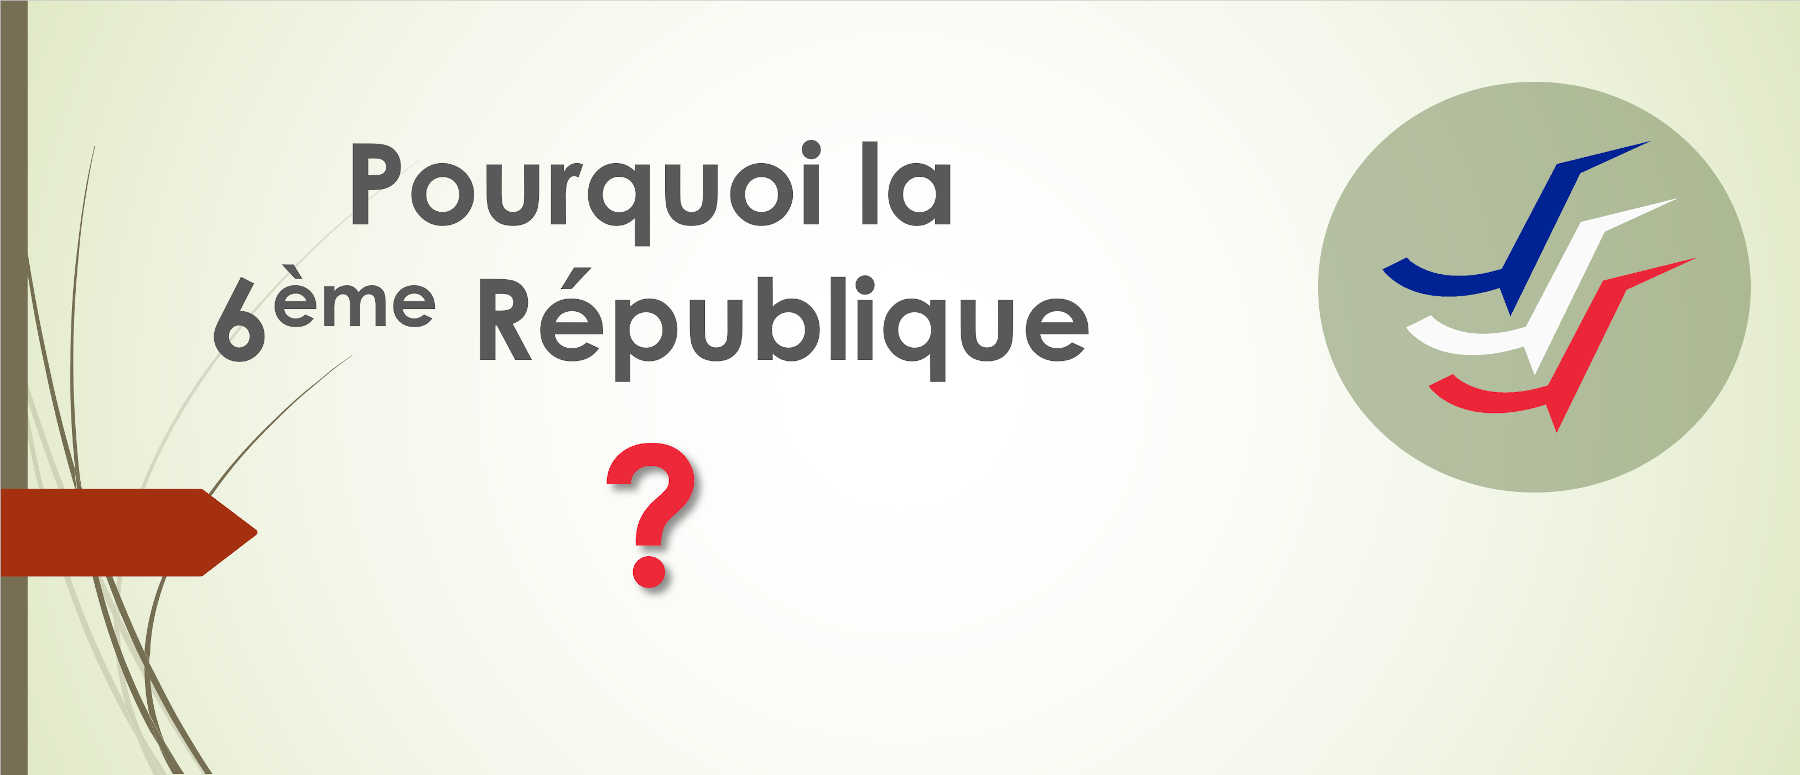 Pourquoi la 6ème République ?